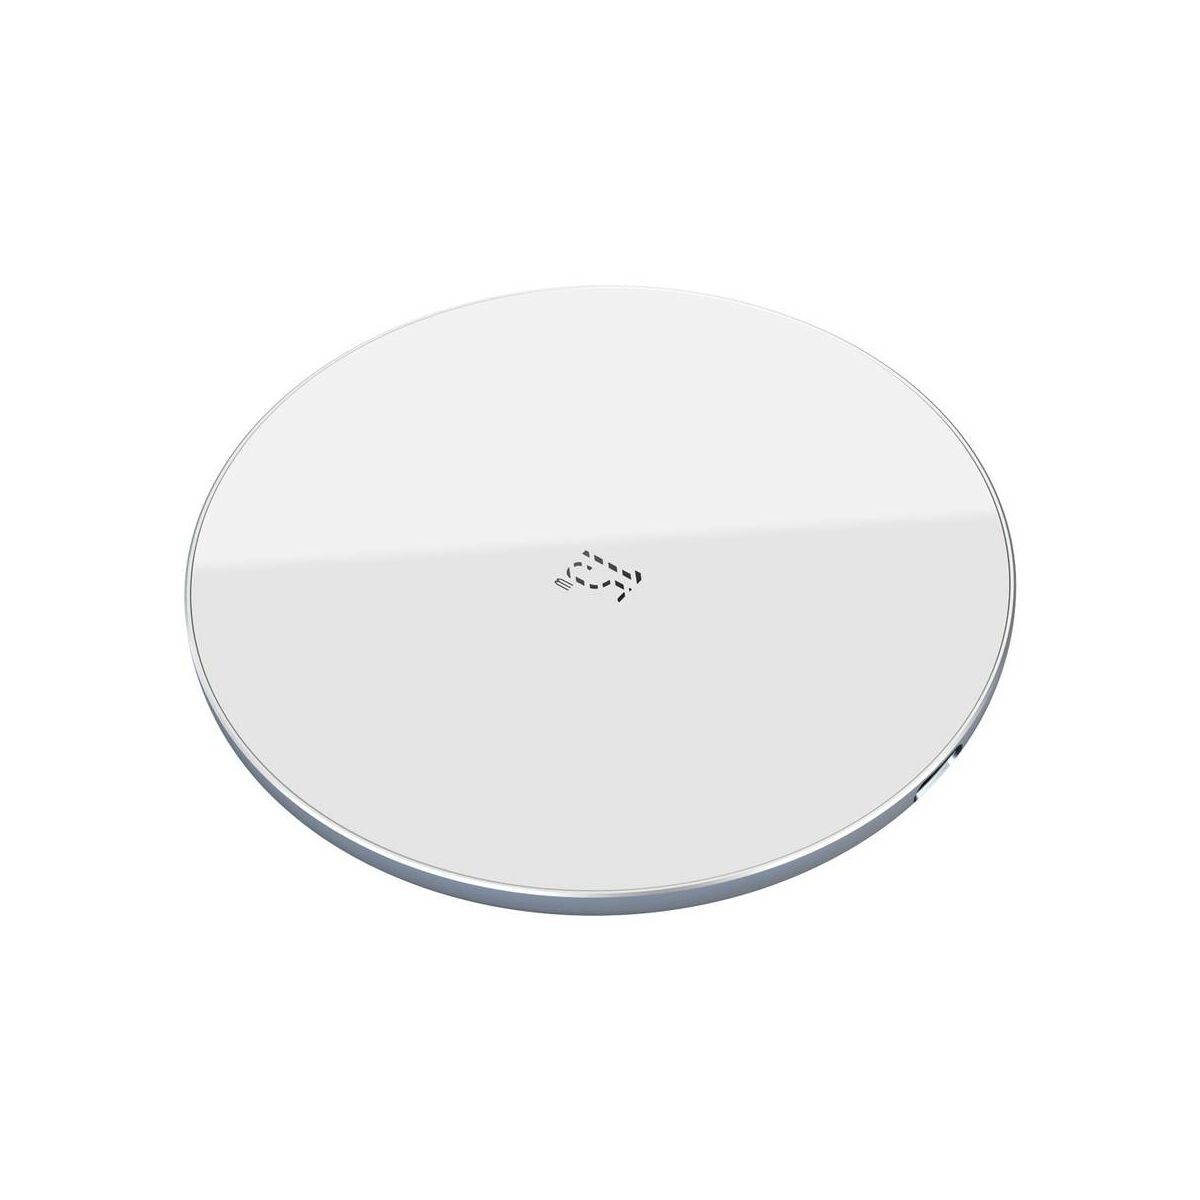 Kép 4/9 - Baseus vezeték nélküli töltő, Simple 2-in-1 frisített verzió, telefon + AirPods, 15W, fehér (WXJK-B02)